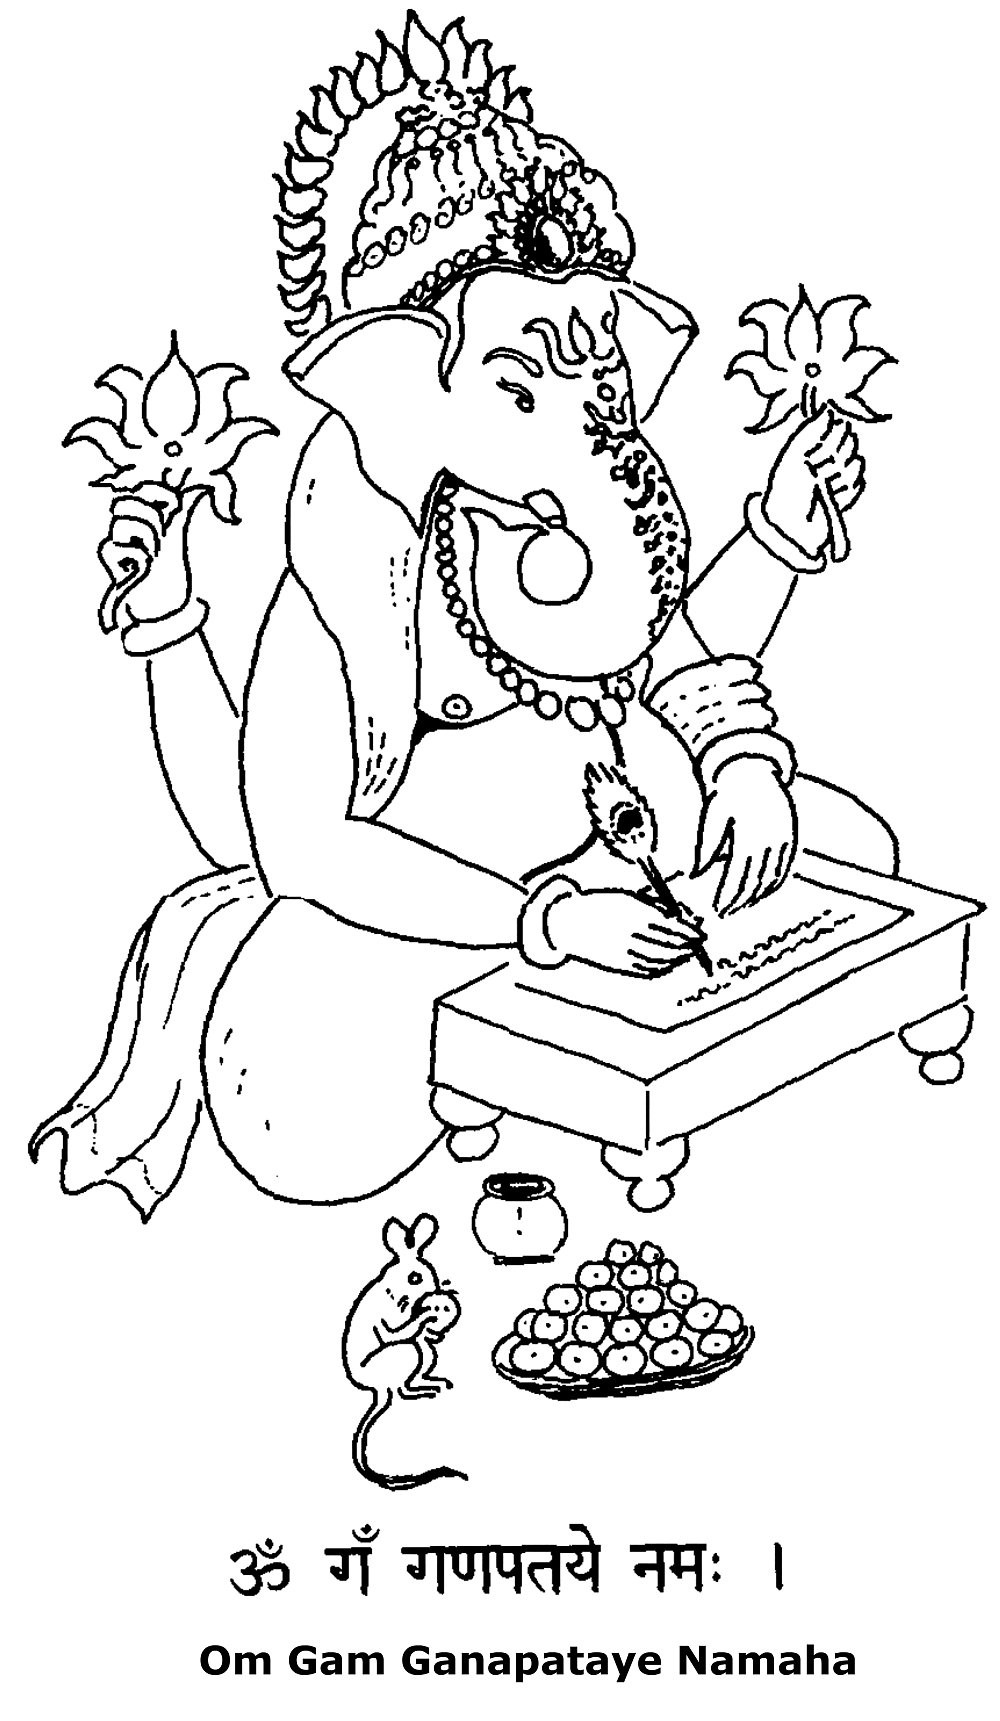 Ganesha, Signore del successo nelle imprese, distruttore degli ostacoli